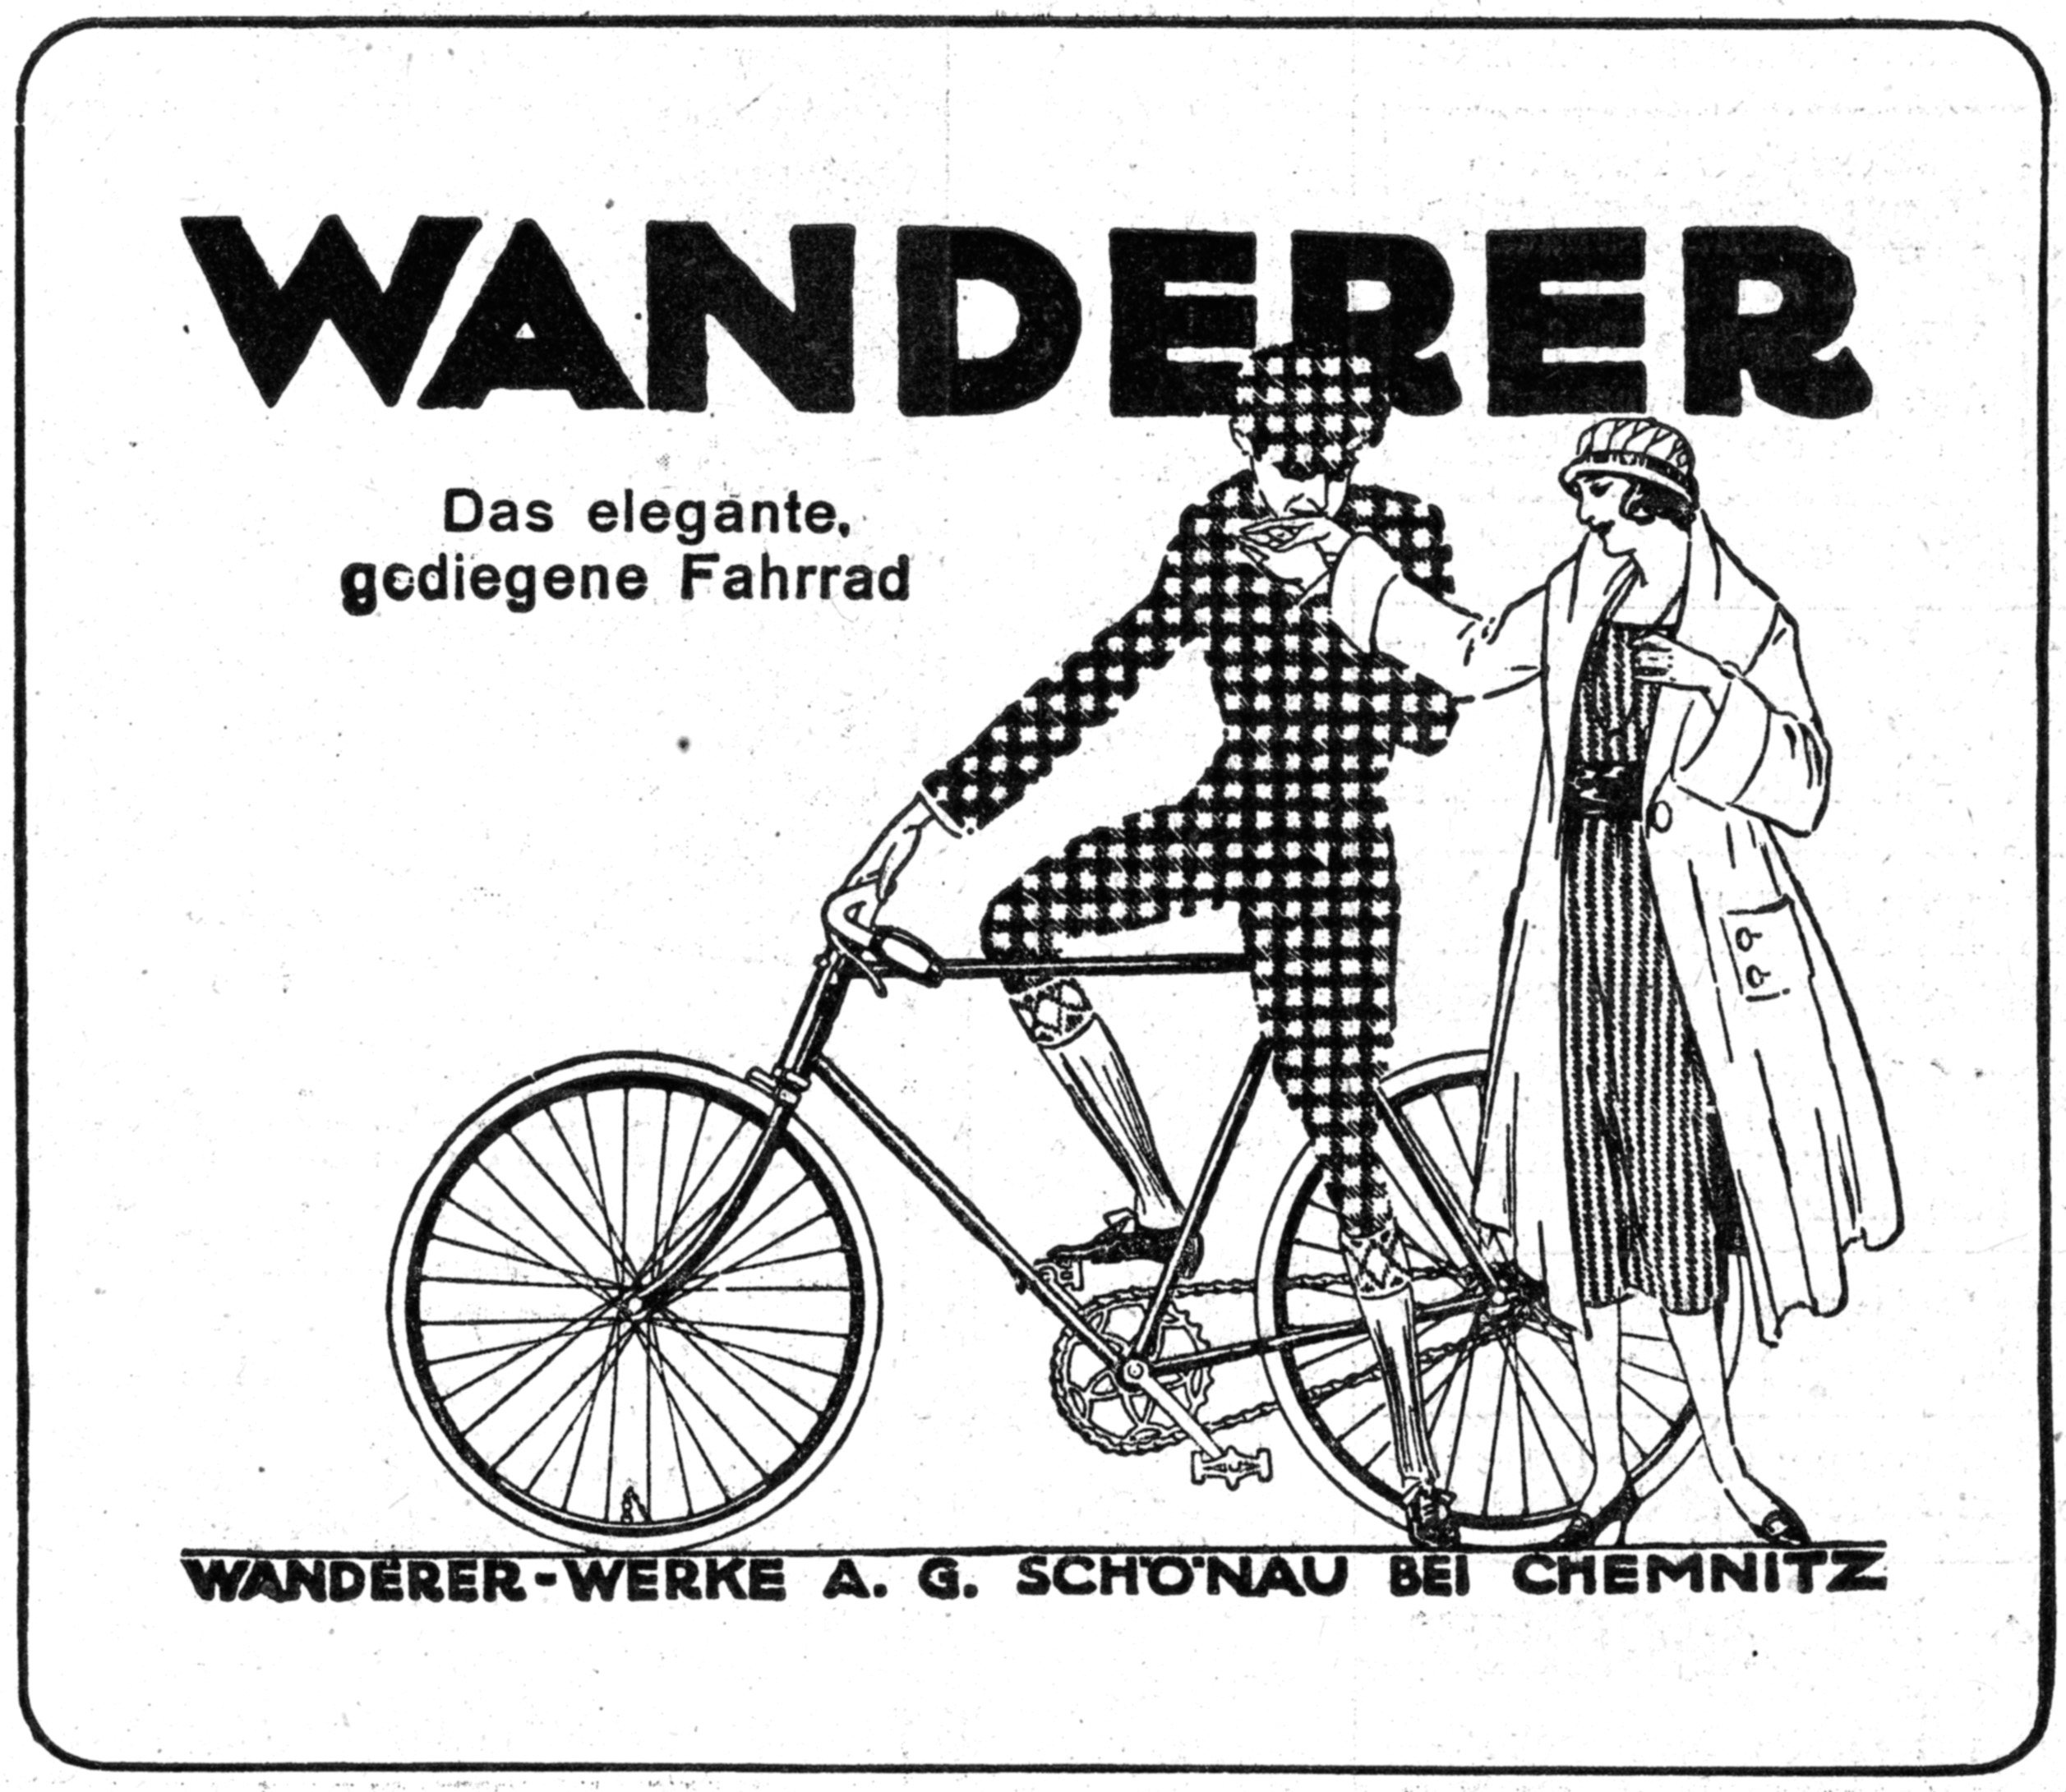 Historische Wanderer-Werbung mit einem Fahrrad und zwei Personen